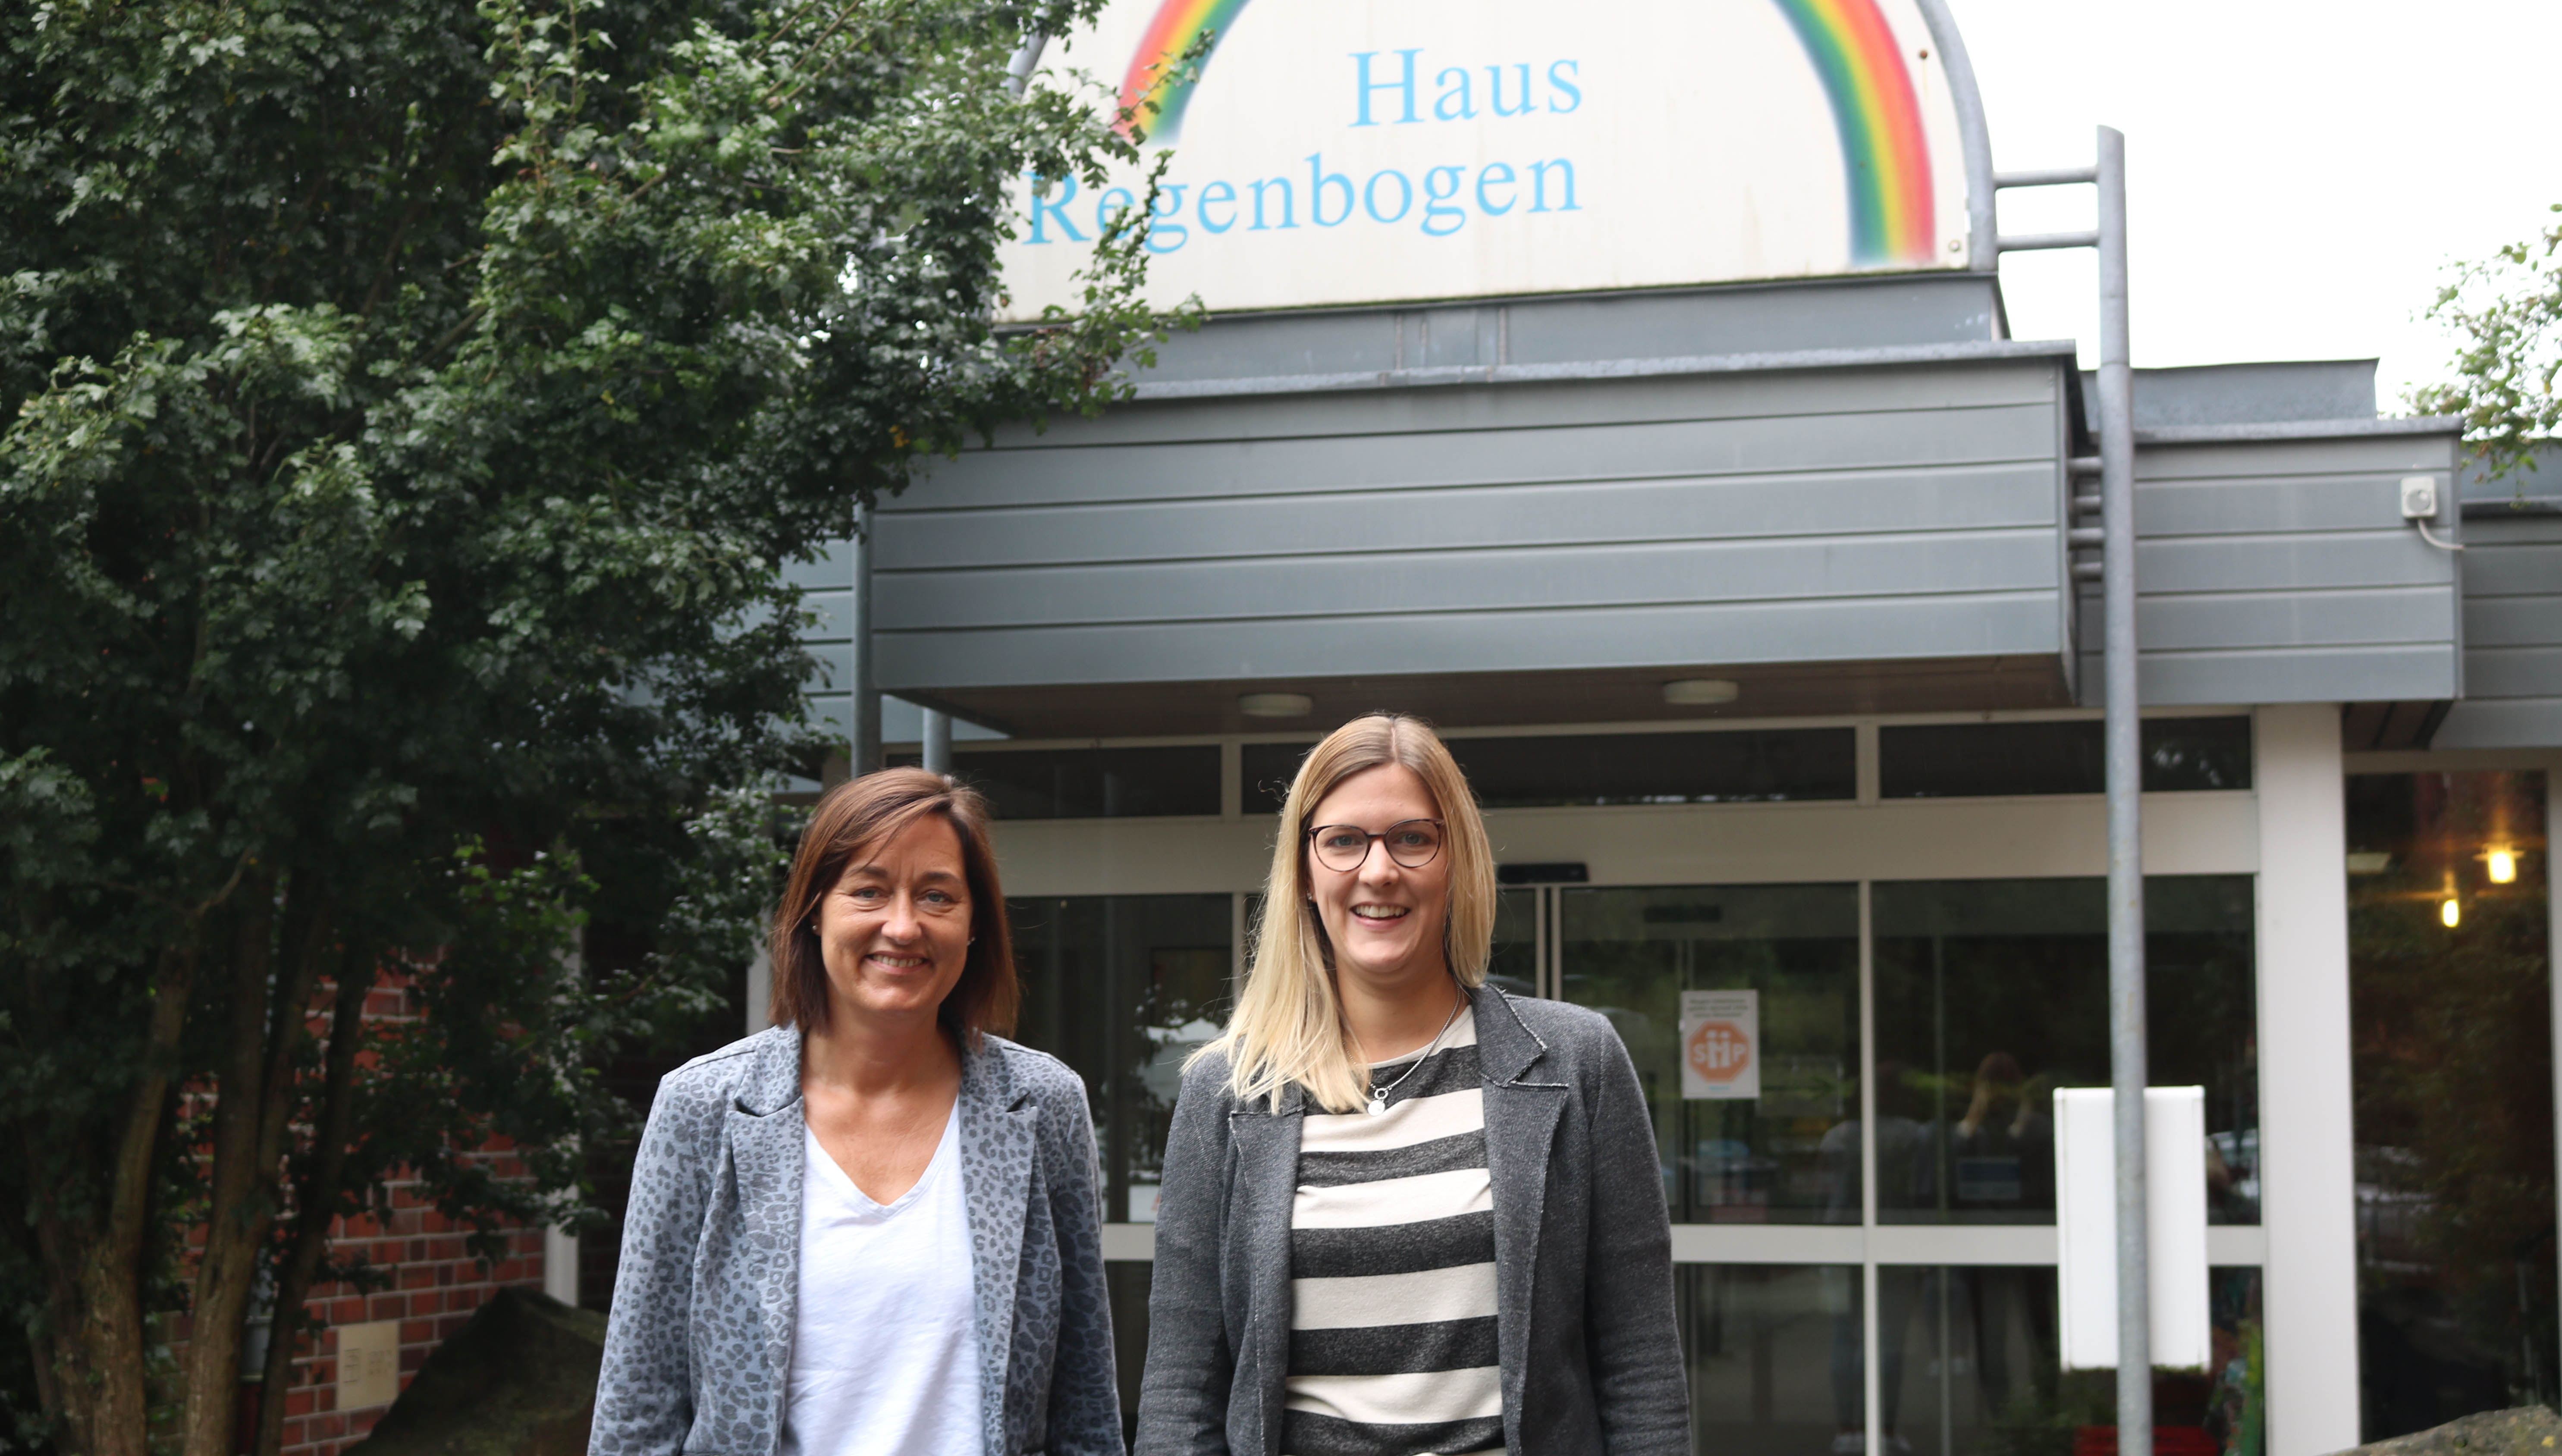 Silke Kolbeck-Lawicka (von links) und Annika Brake freuen sich, dass im Haus Regenbogen wieder mehr Normalität möglich ist. Foto: Kerstin Kempermann